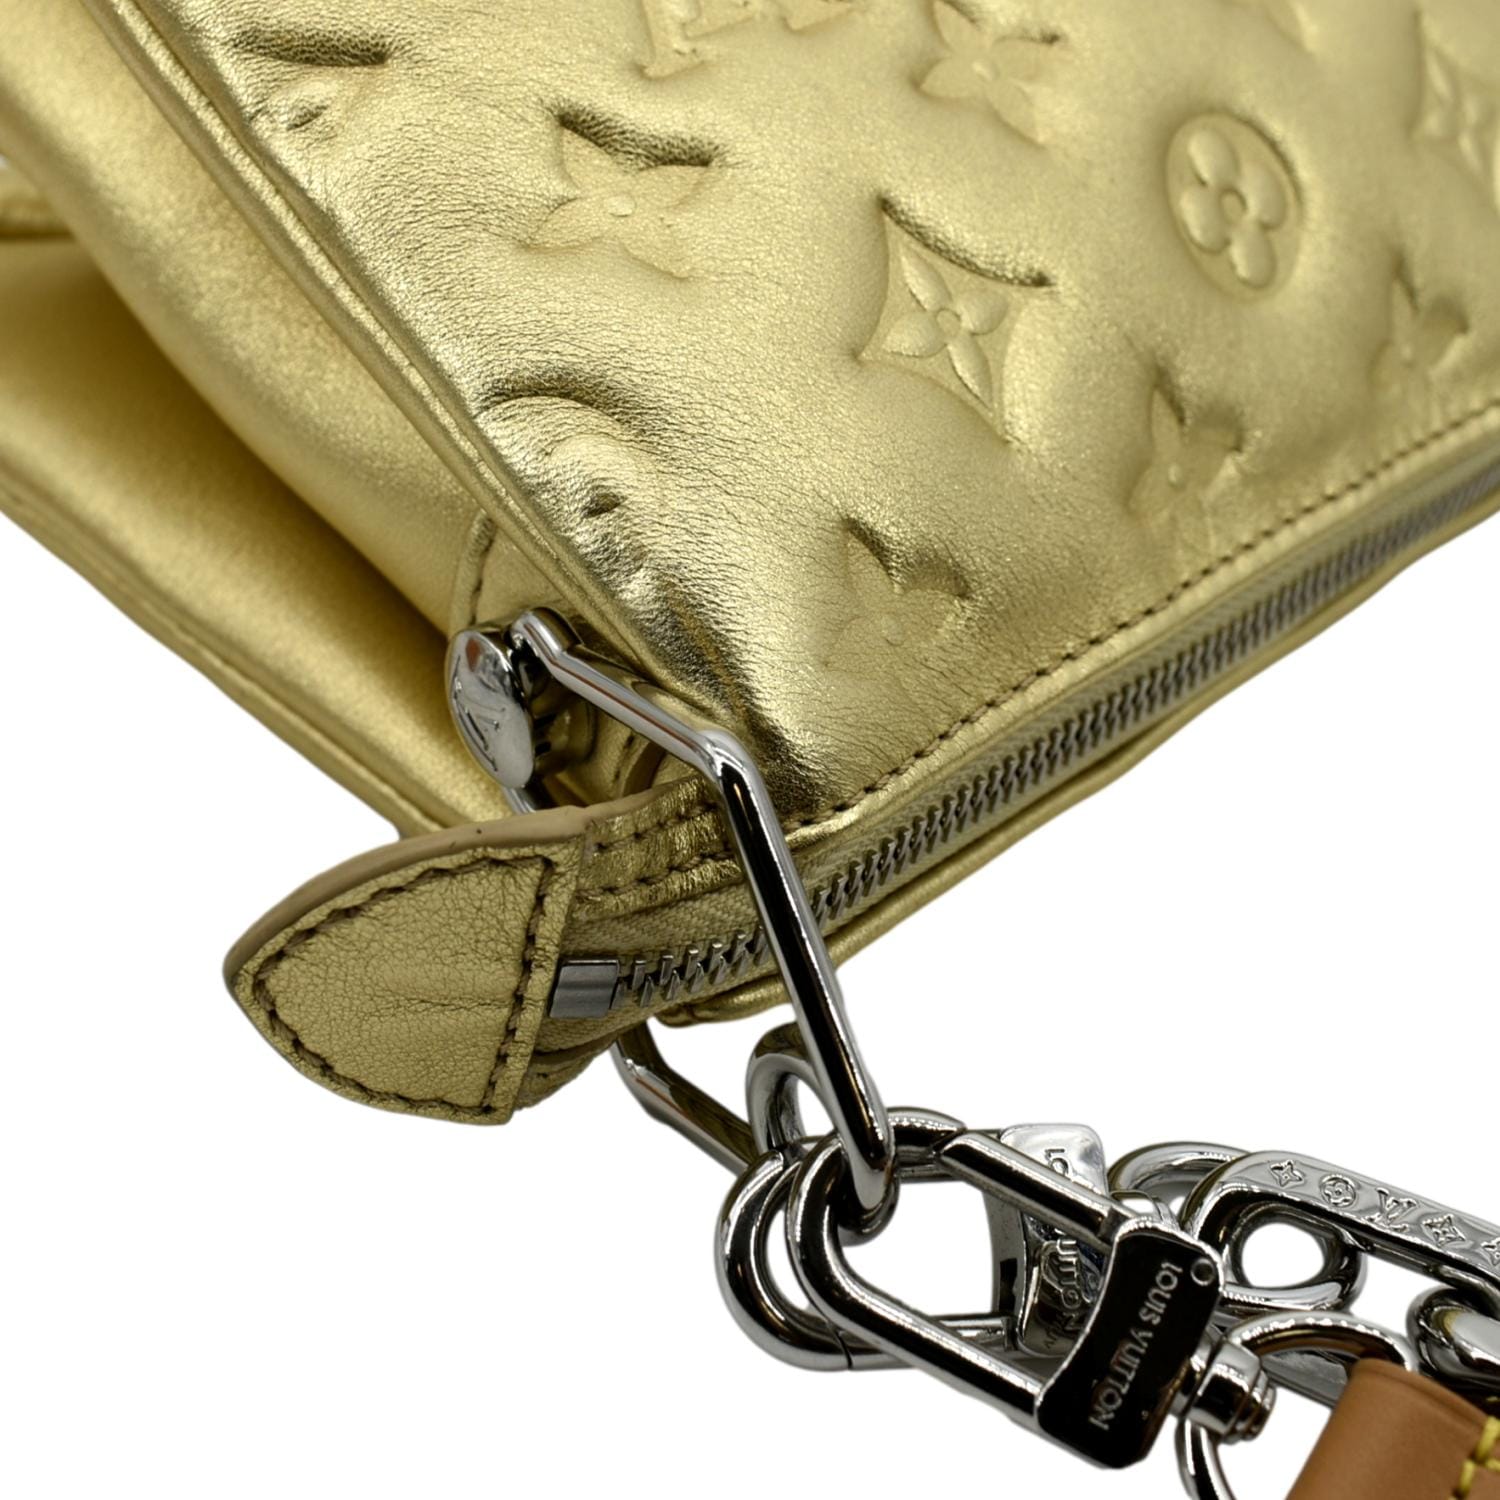 Louis Vuitton Gold Monogram Embossed Coussin PM Bag Louis Vuitton